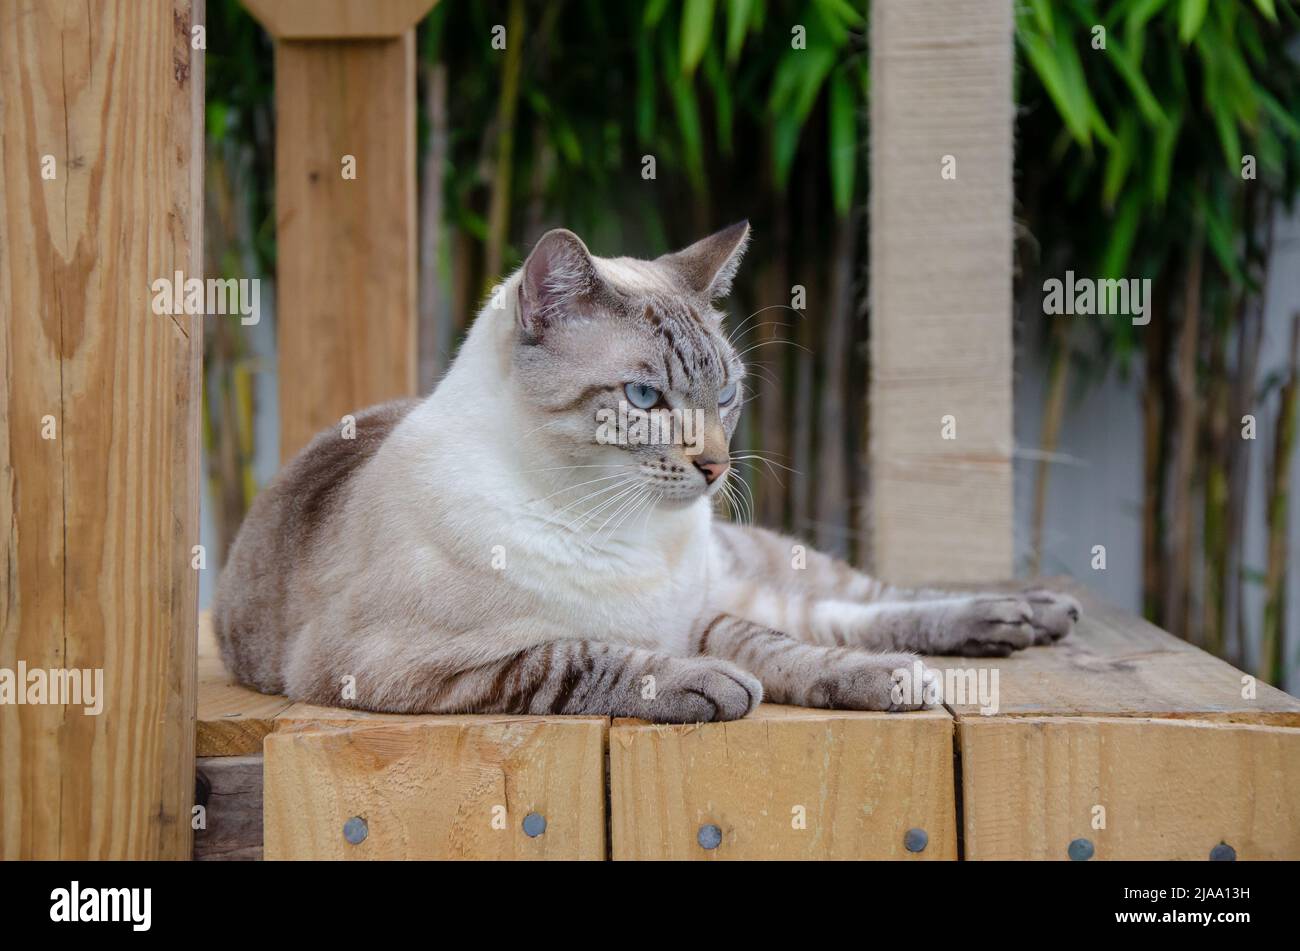 gatto chubby, siamese con occhi blu, esterno, posato su piattaforma di legno, bambù sullo sfondo, giorno, livello degli occhi Foto Stock